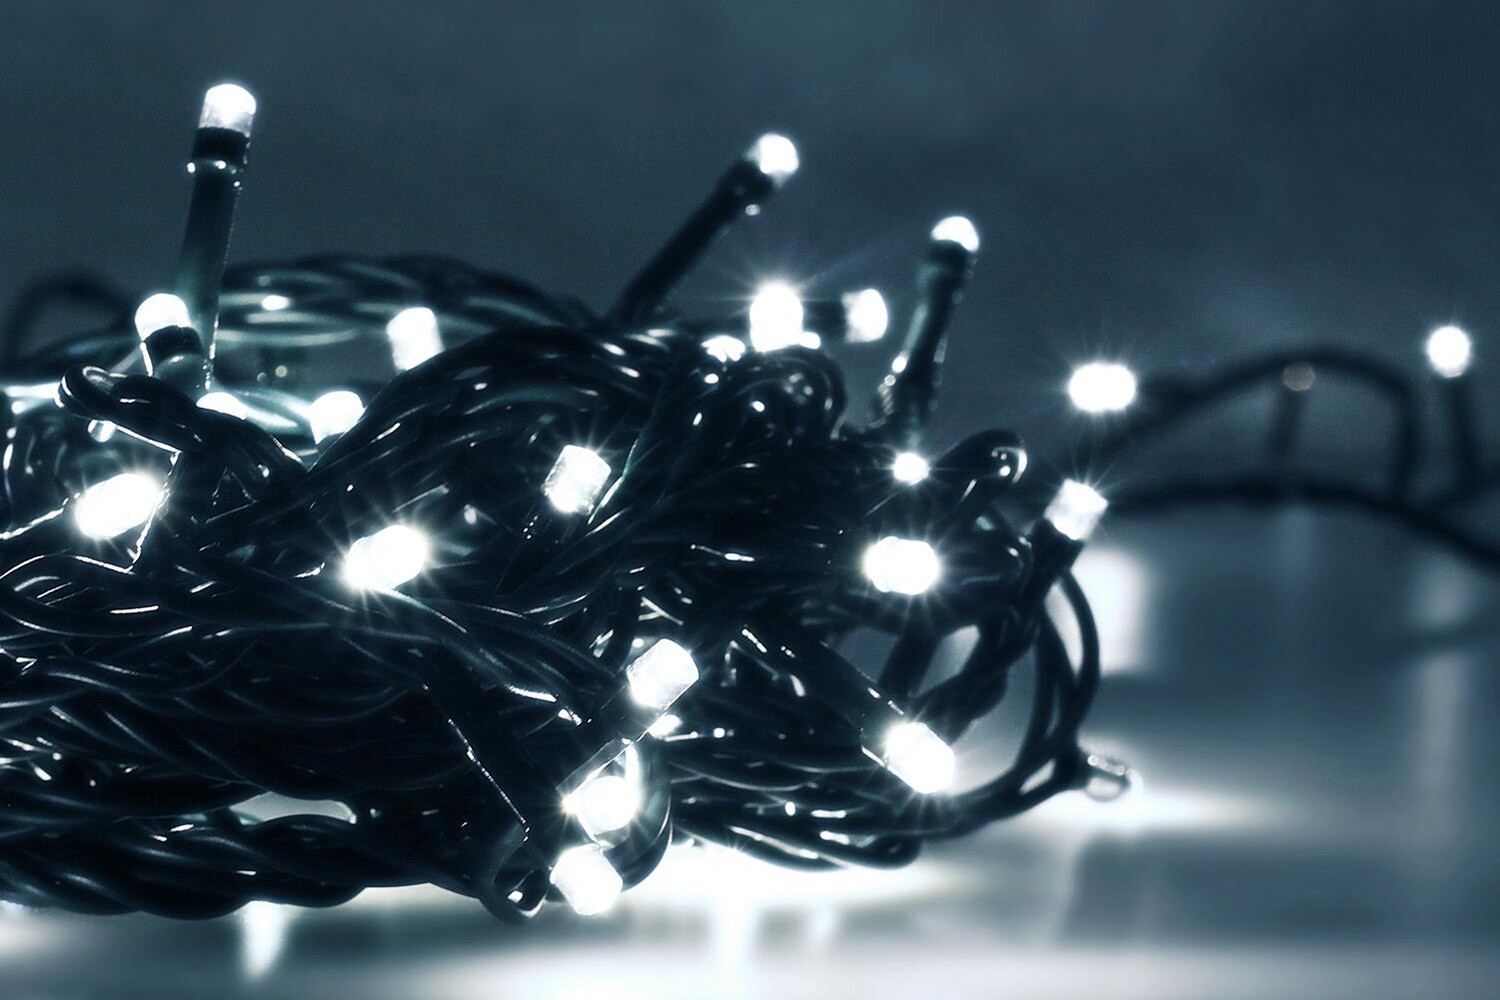 20 LED Lichterkette Beleuchtung Leuchtkette Weihnachten Deko Innen